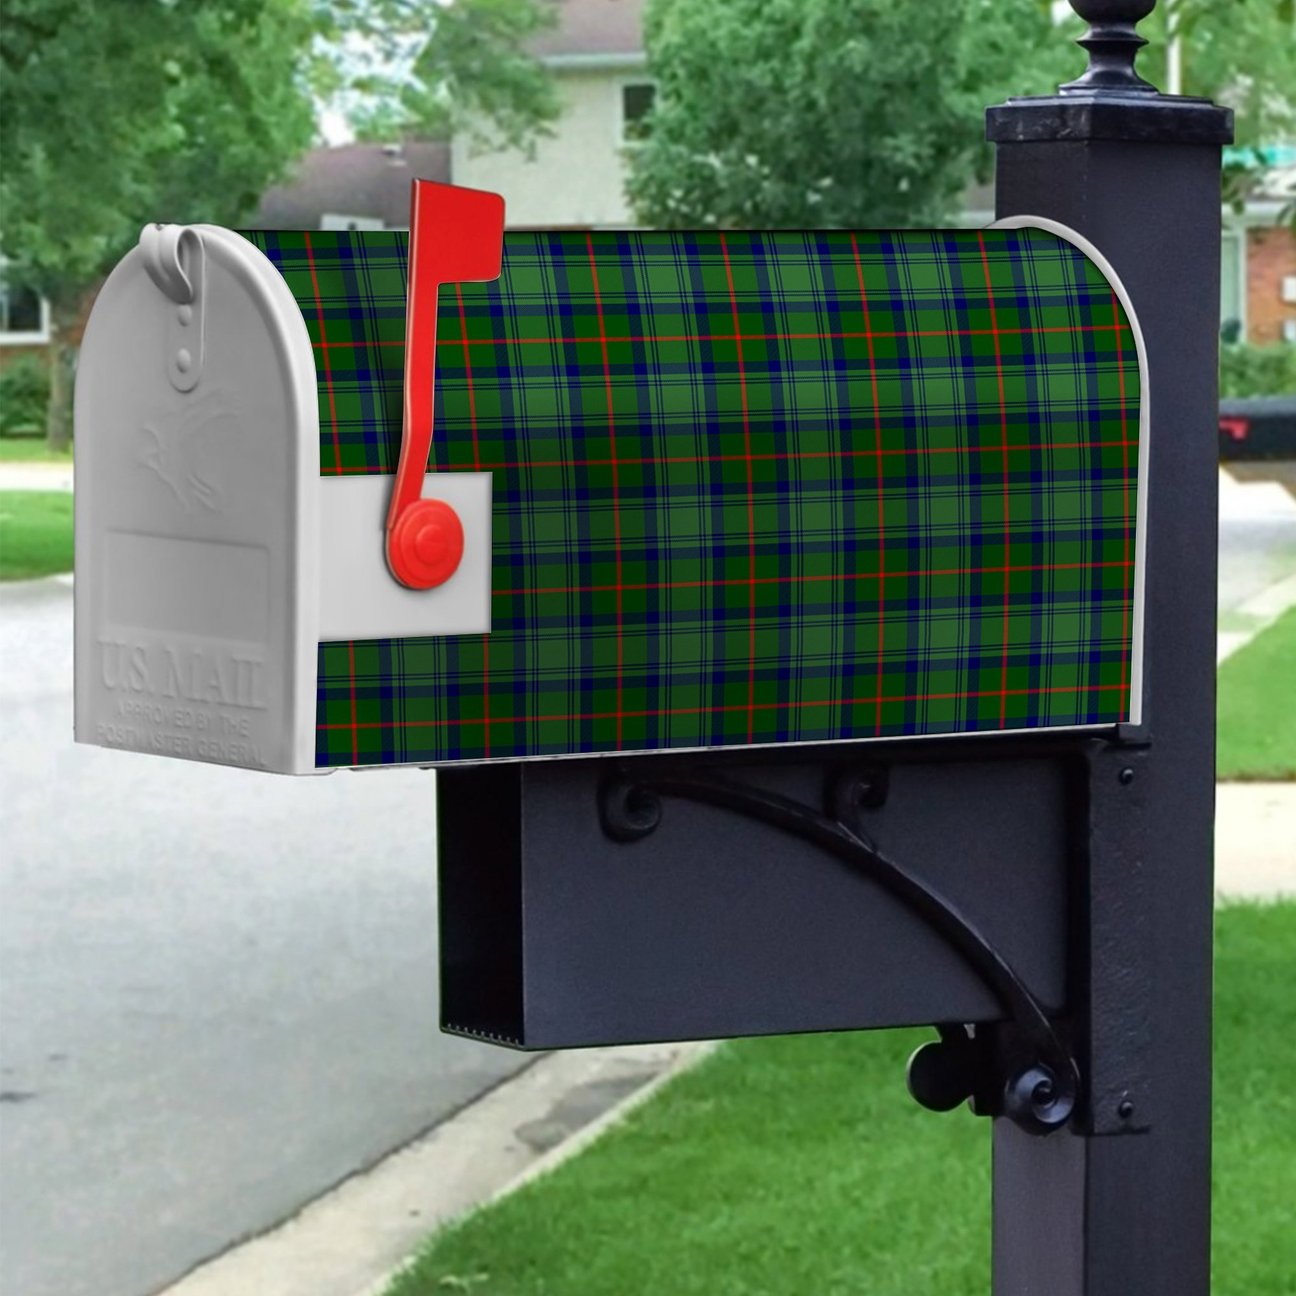 Cranstoun Tartan Crest Mailbox